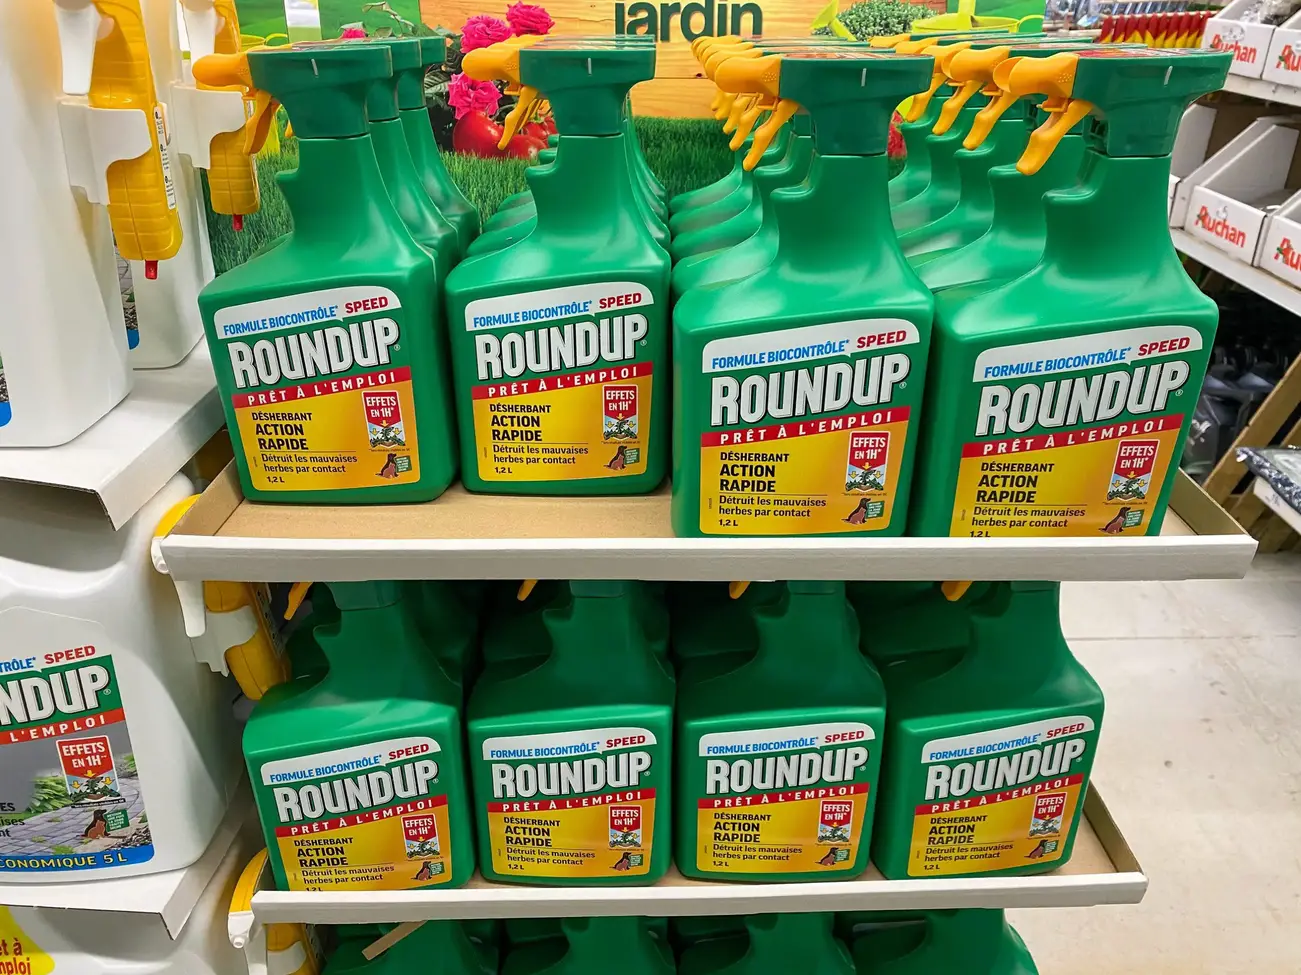 Le nouveau Roundup est un nom de marque d'un herbicide sans glyphosate, fabriqué par Monsanto Company - désherbant au glyphosate